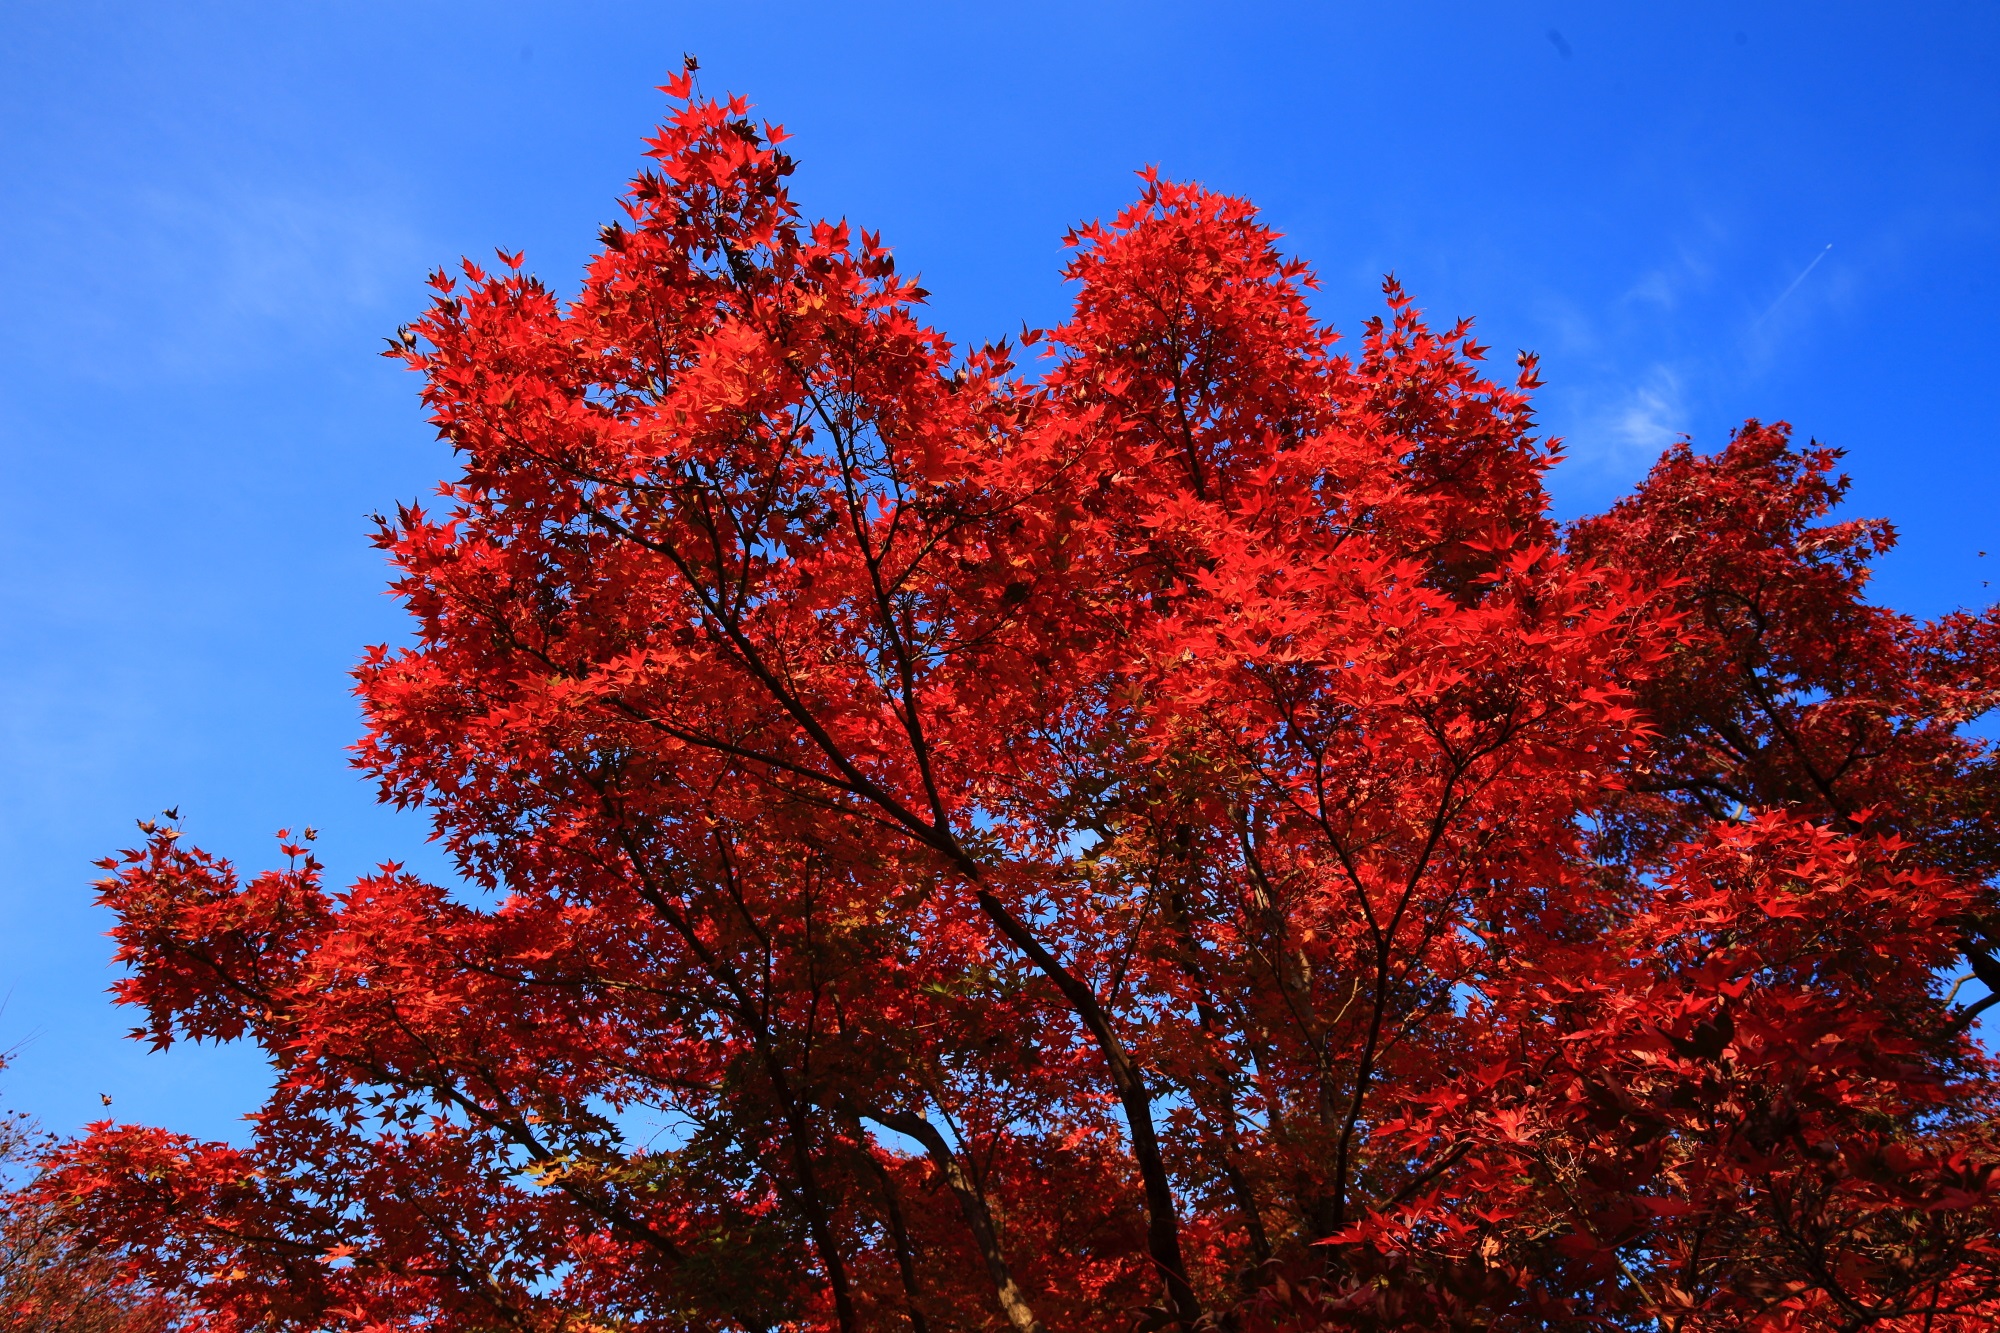 青空に映える鮮烈な赤さの紅葉